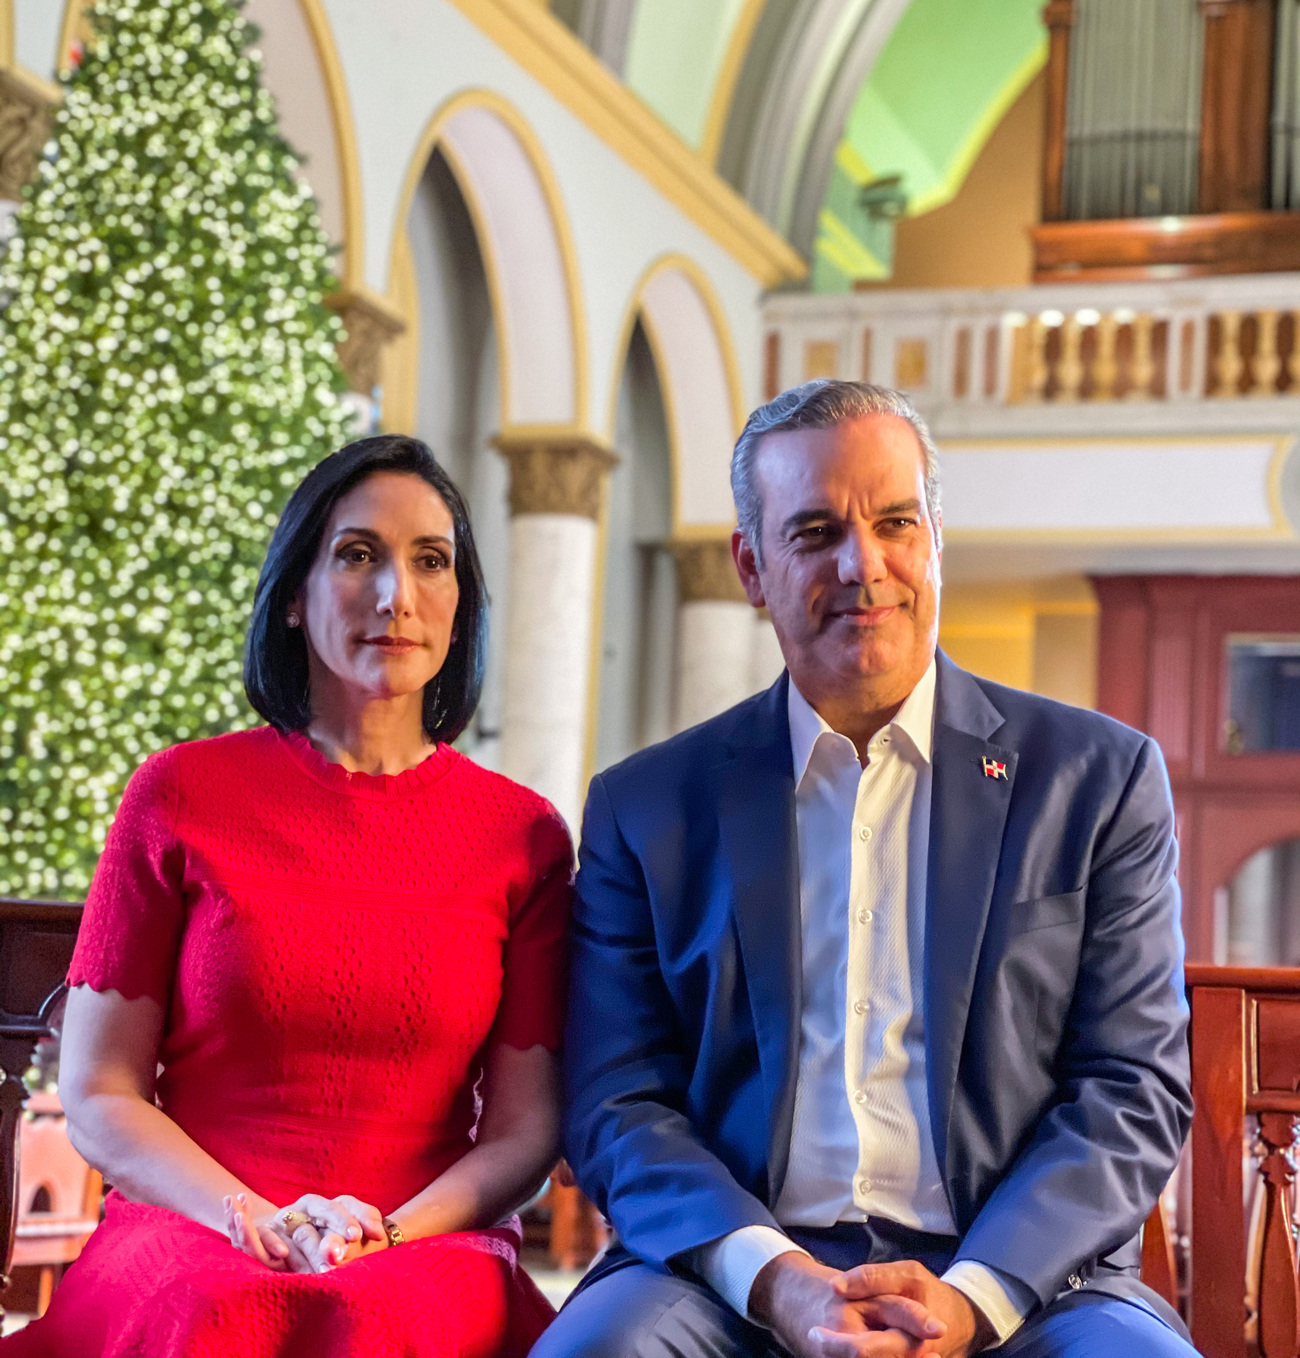 REPÚBLICA DOMINICANA: Presidente Abinader y la primera dama Raquel Arbaje piden protegerse y proteger a los demás durante las celebraciones Navideñas